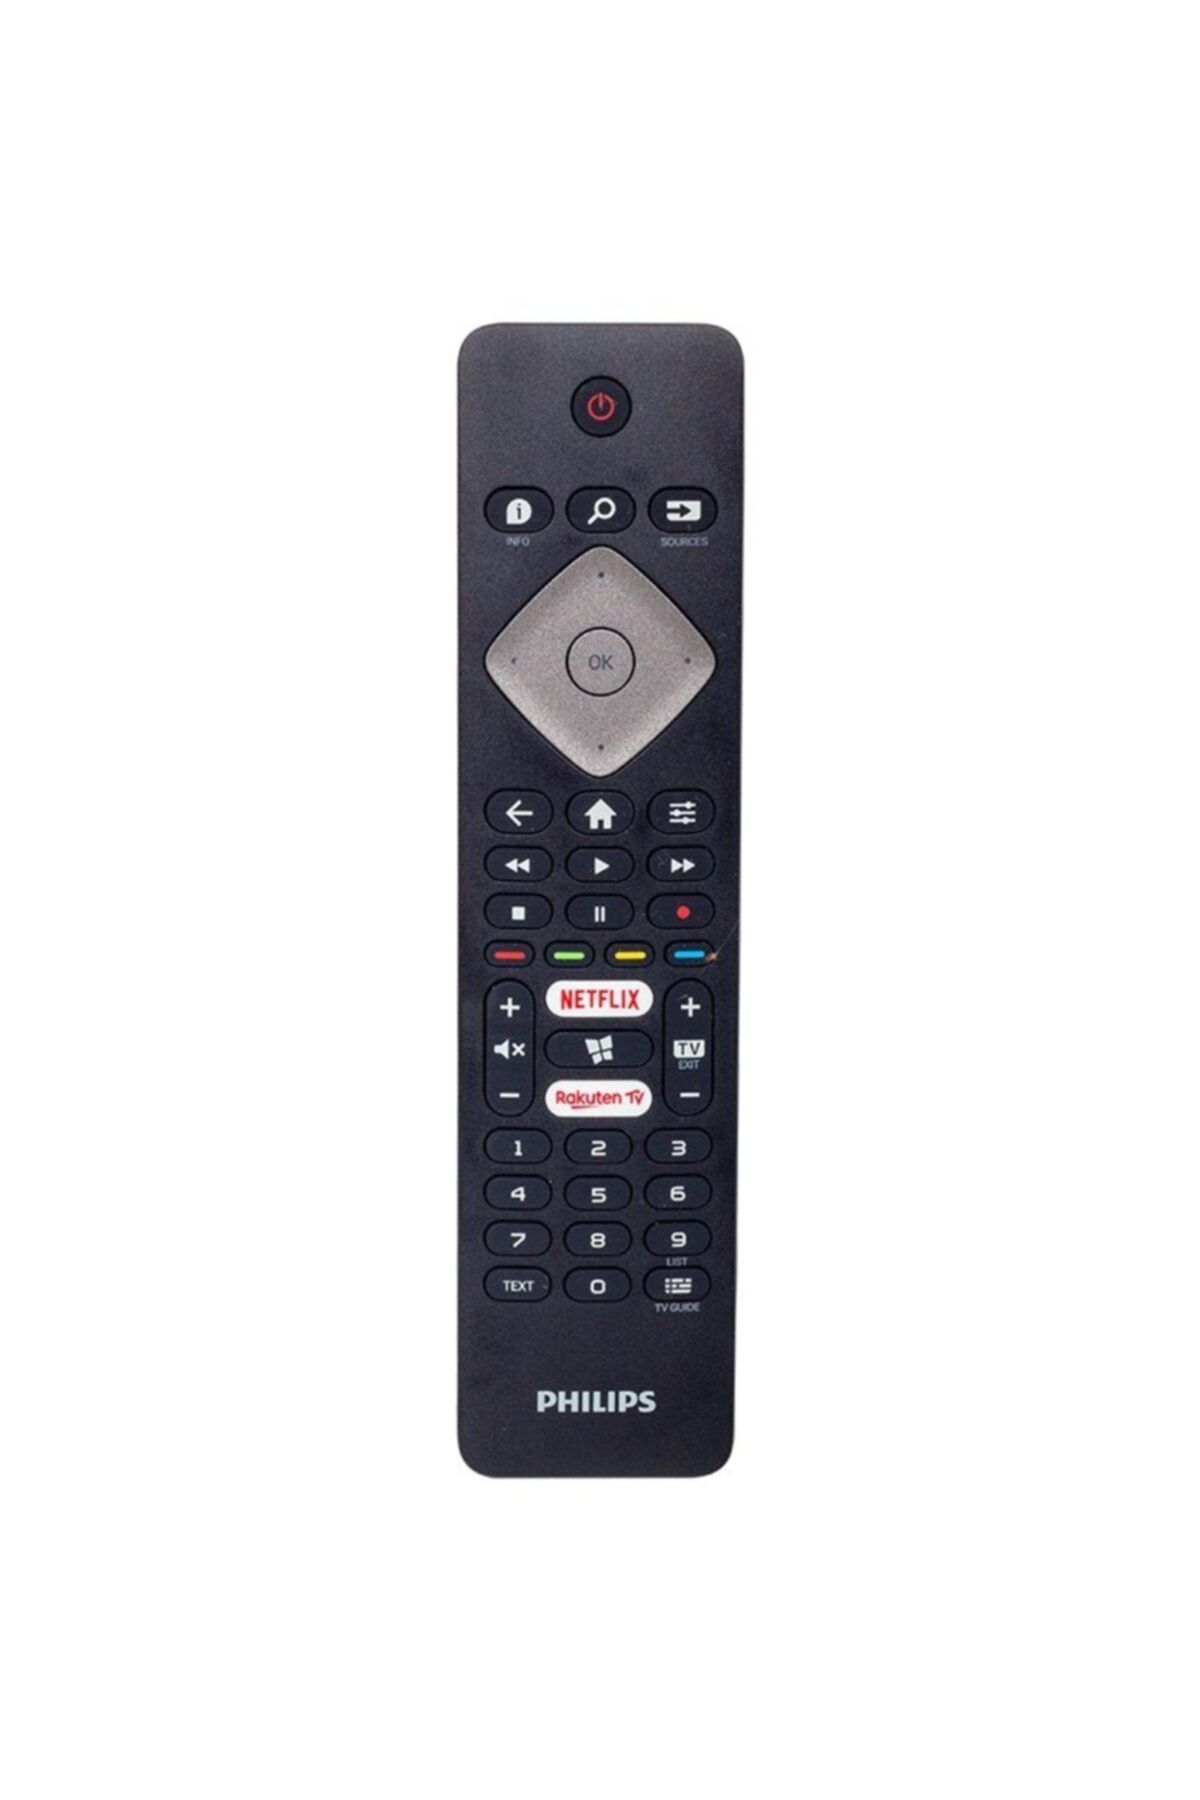 Philips Netflıx Rakuten Tv Tuşlu Led Tv Kumandası